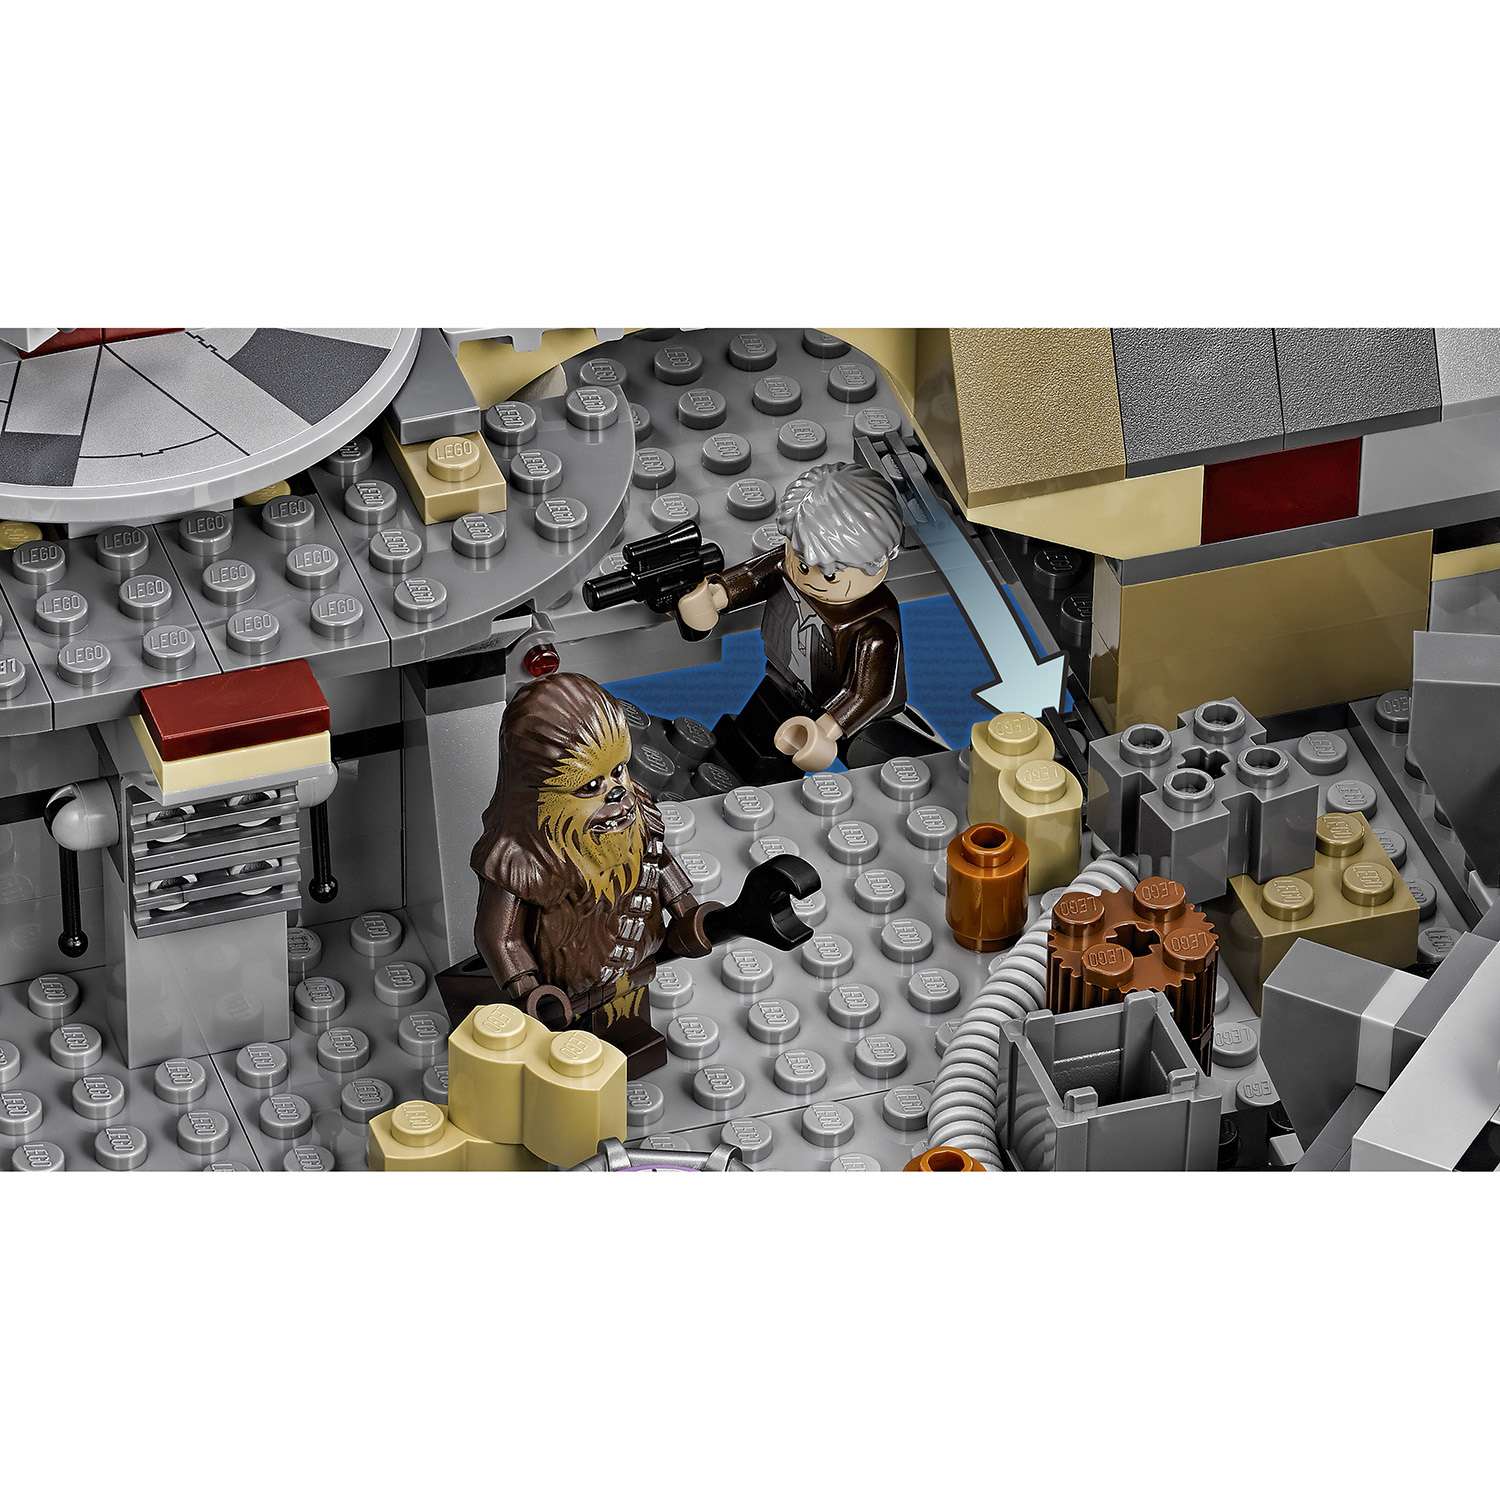 Конструктор LEGO Star Wars TM Сокол Тысячелетия (Millennium Falcon™) (75105) - фото 9